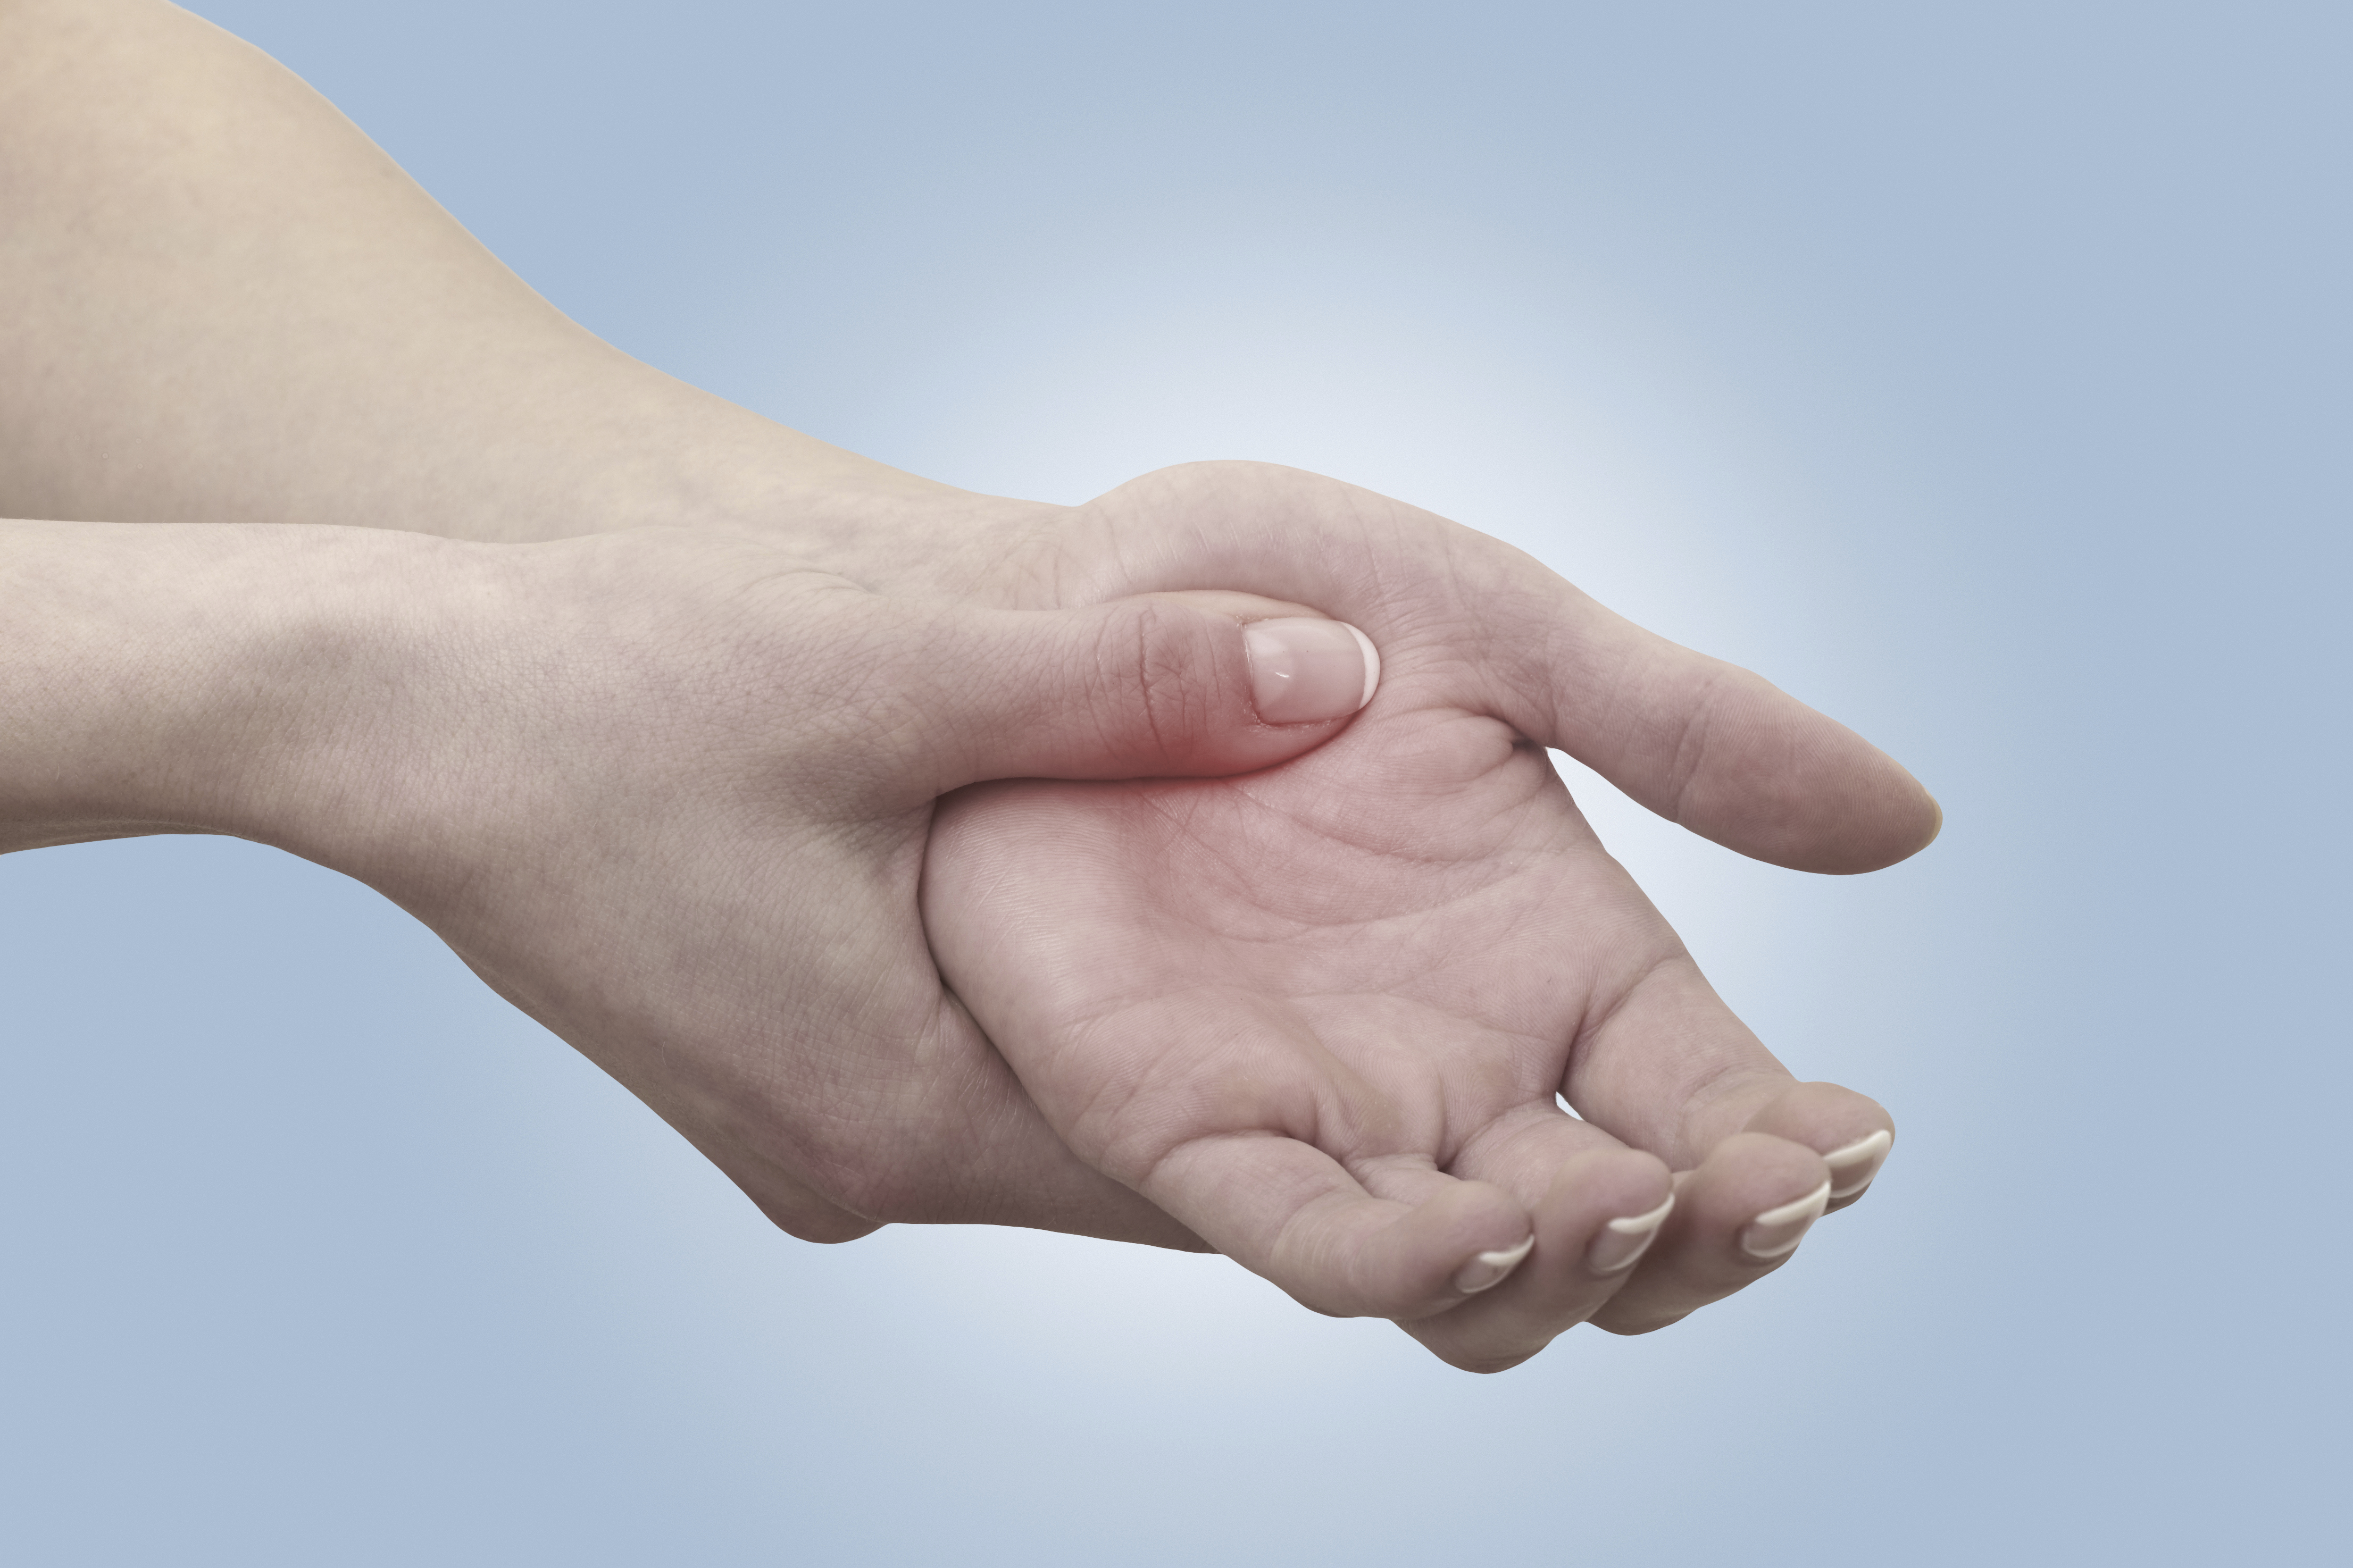 Symposium: Handtherapie, ligt behandelen voor de hand? Een specialisme apart